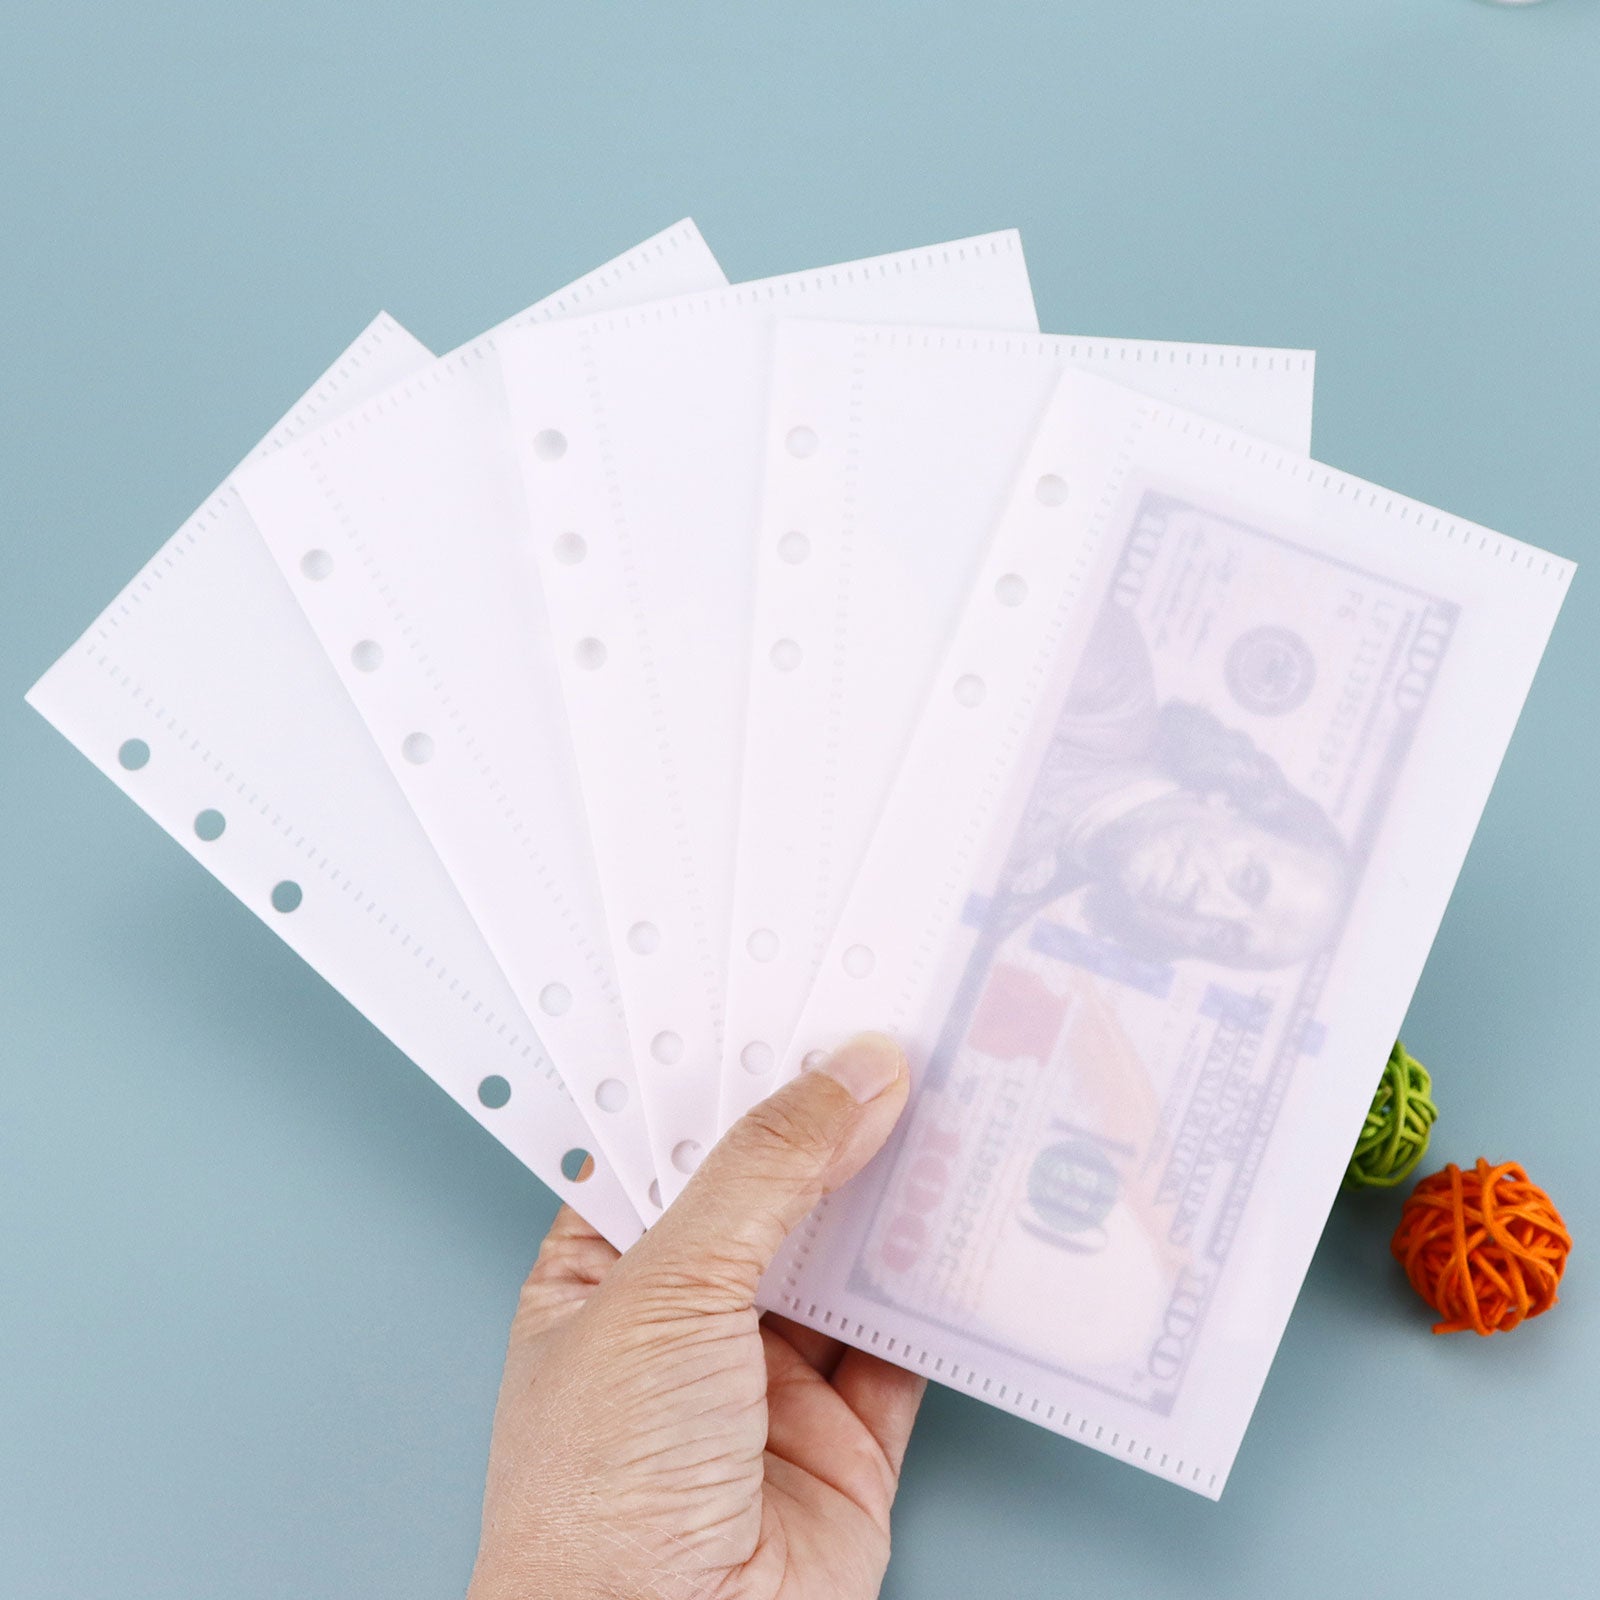 Plastic A6 Cash envelopes 5pcs per set – MultiBey - For Your